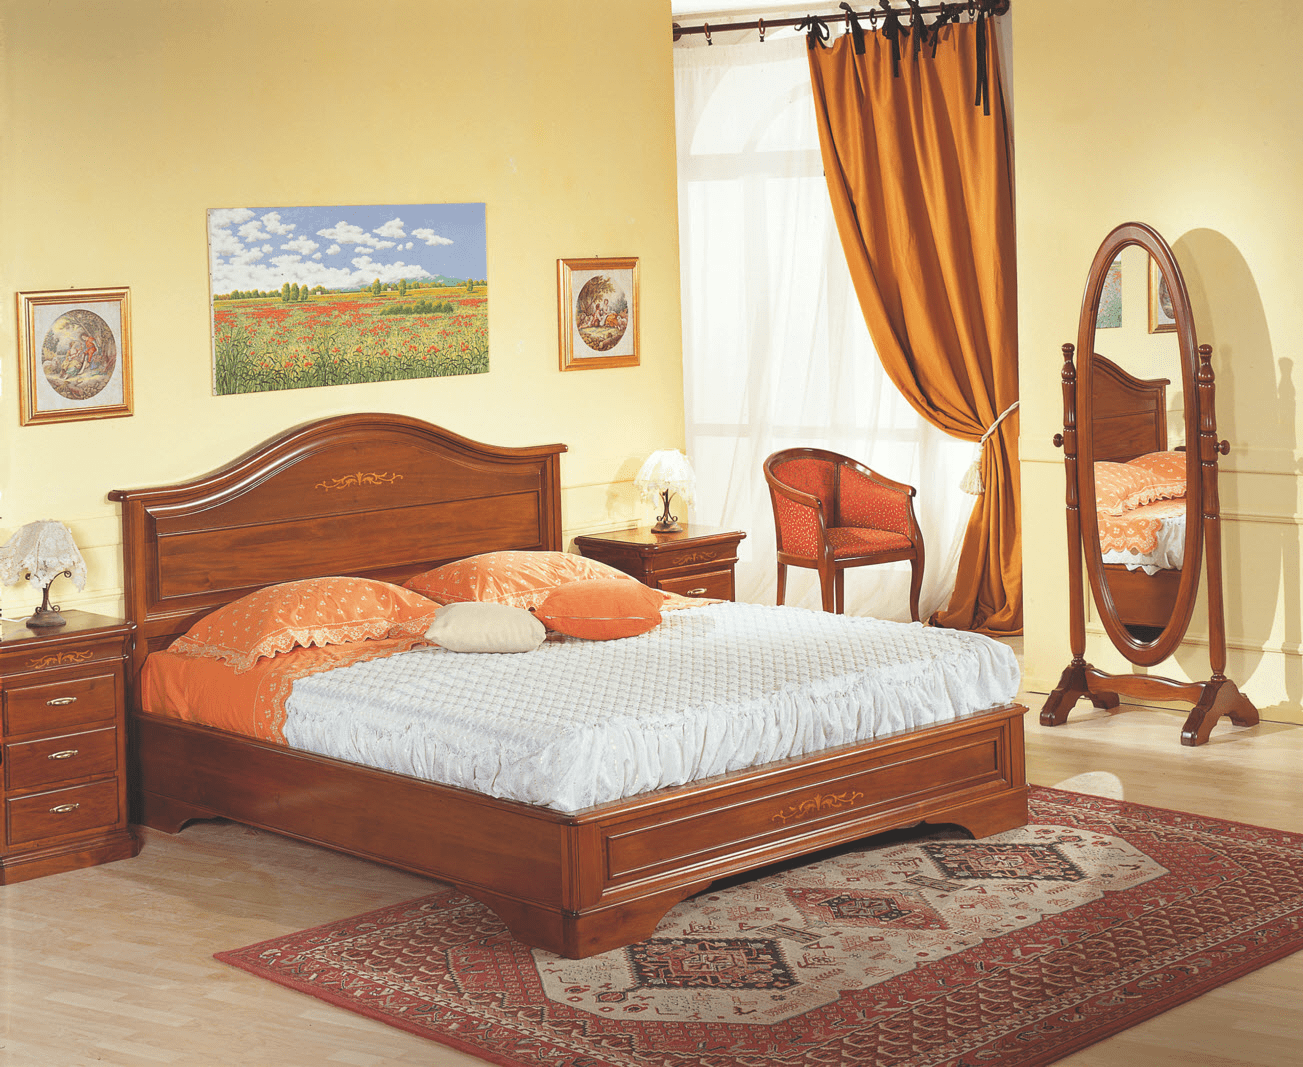 Комплект мебели для спальни из коллекции Ottocento из Италии